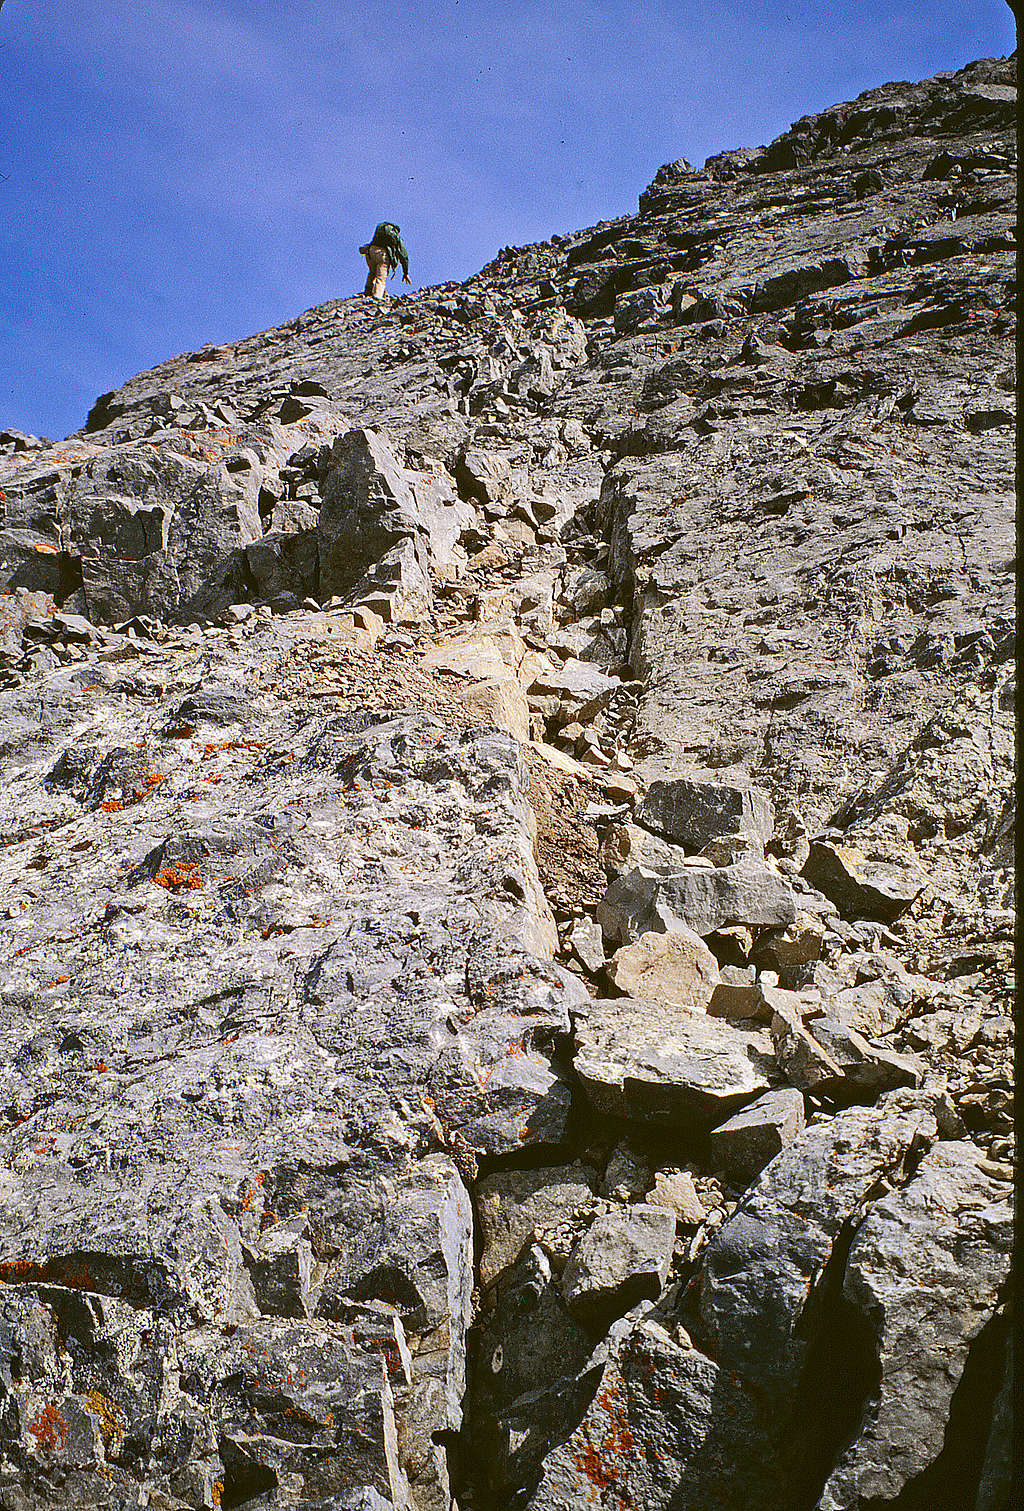 Borah Peak - tackling the summit block